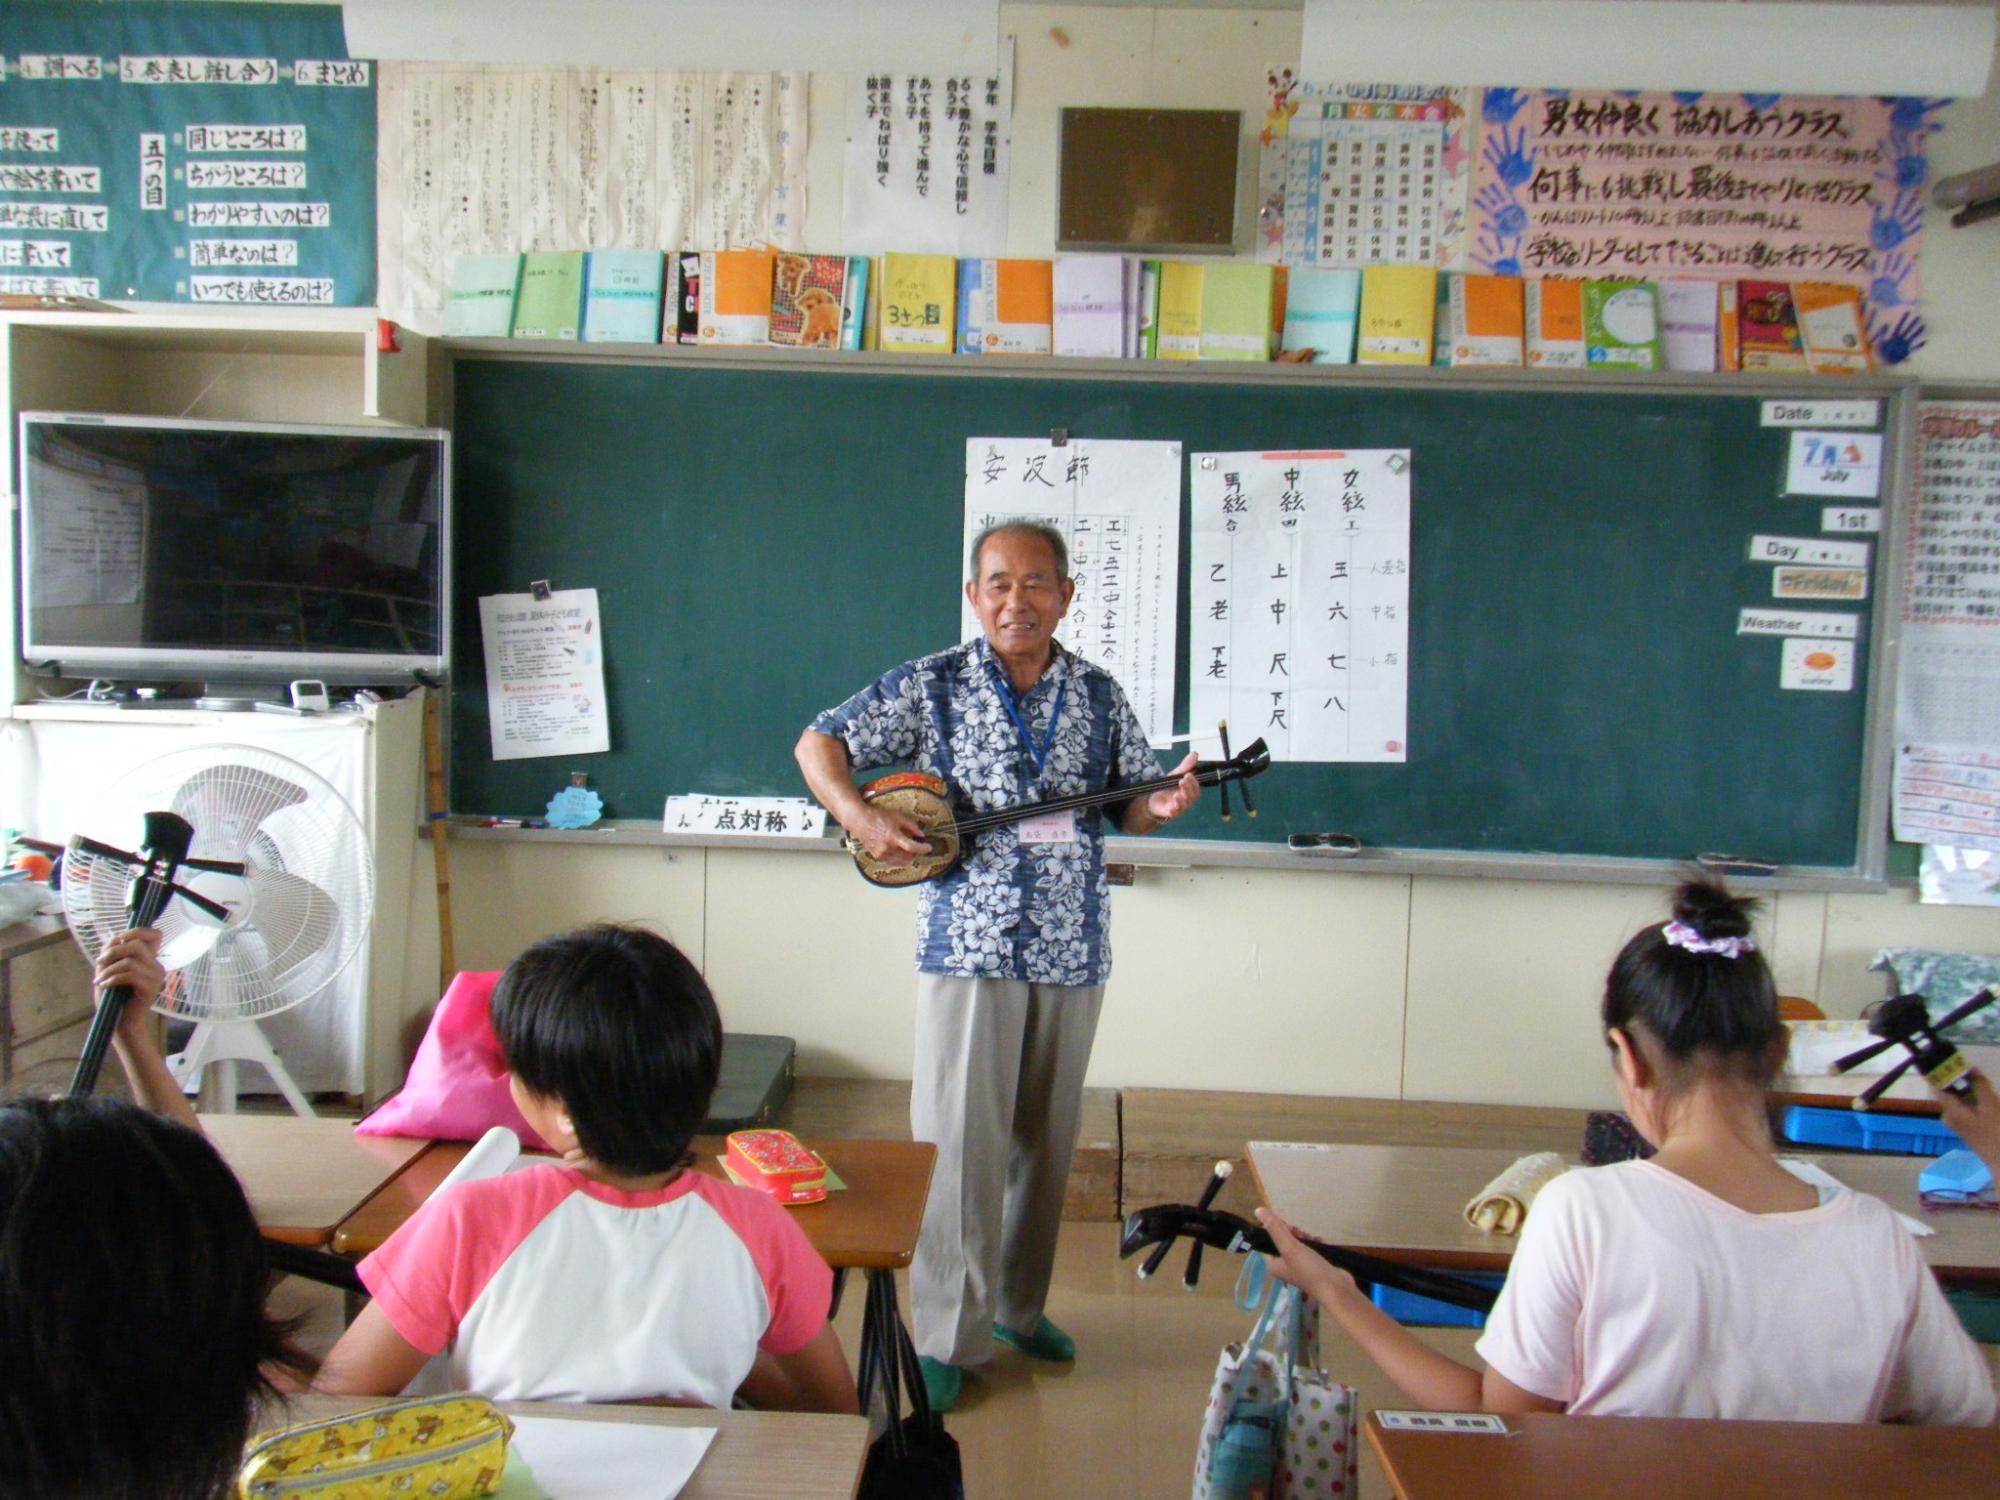 学校の黒板の前で数人の子供を前に立って三味線を弾いている老人の写真